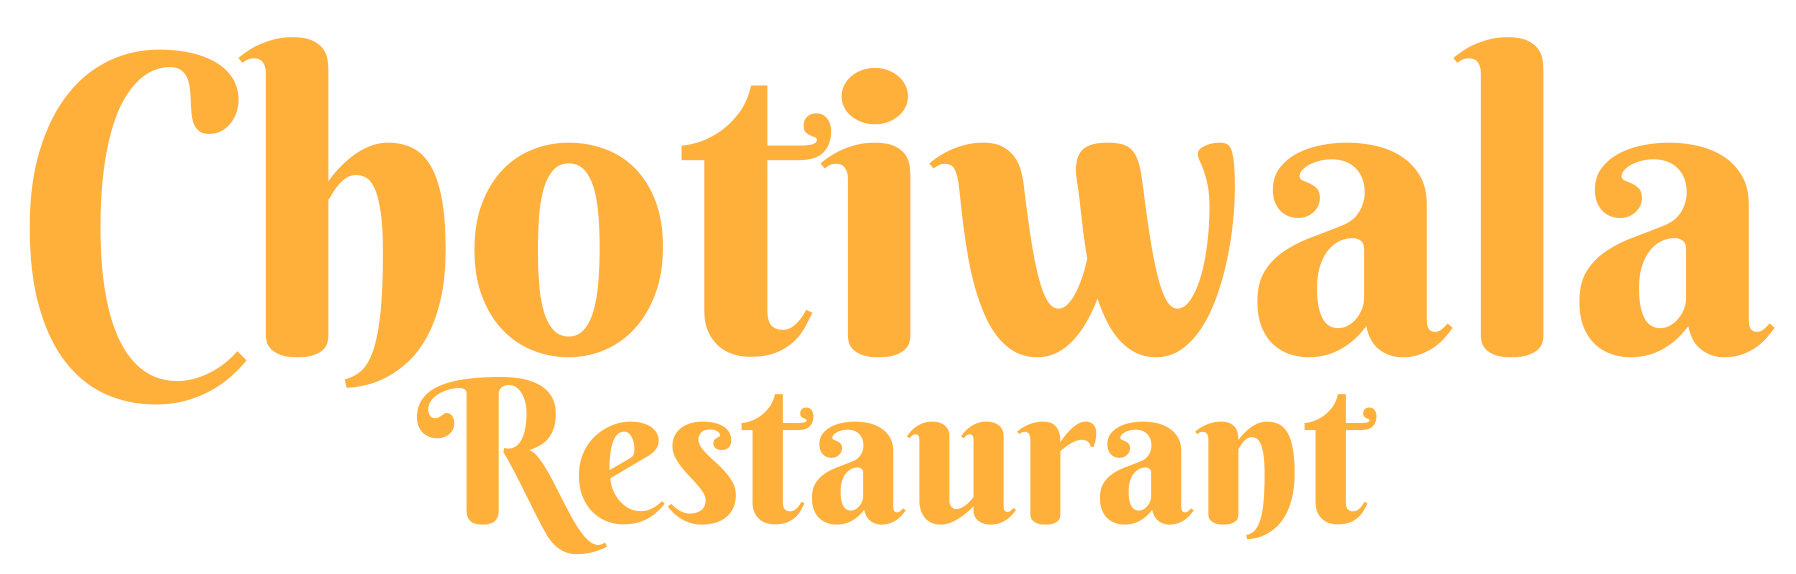 Chotiwala Restaurant in Haridwar